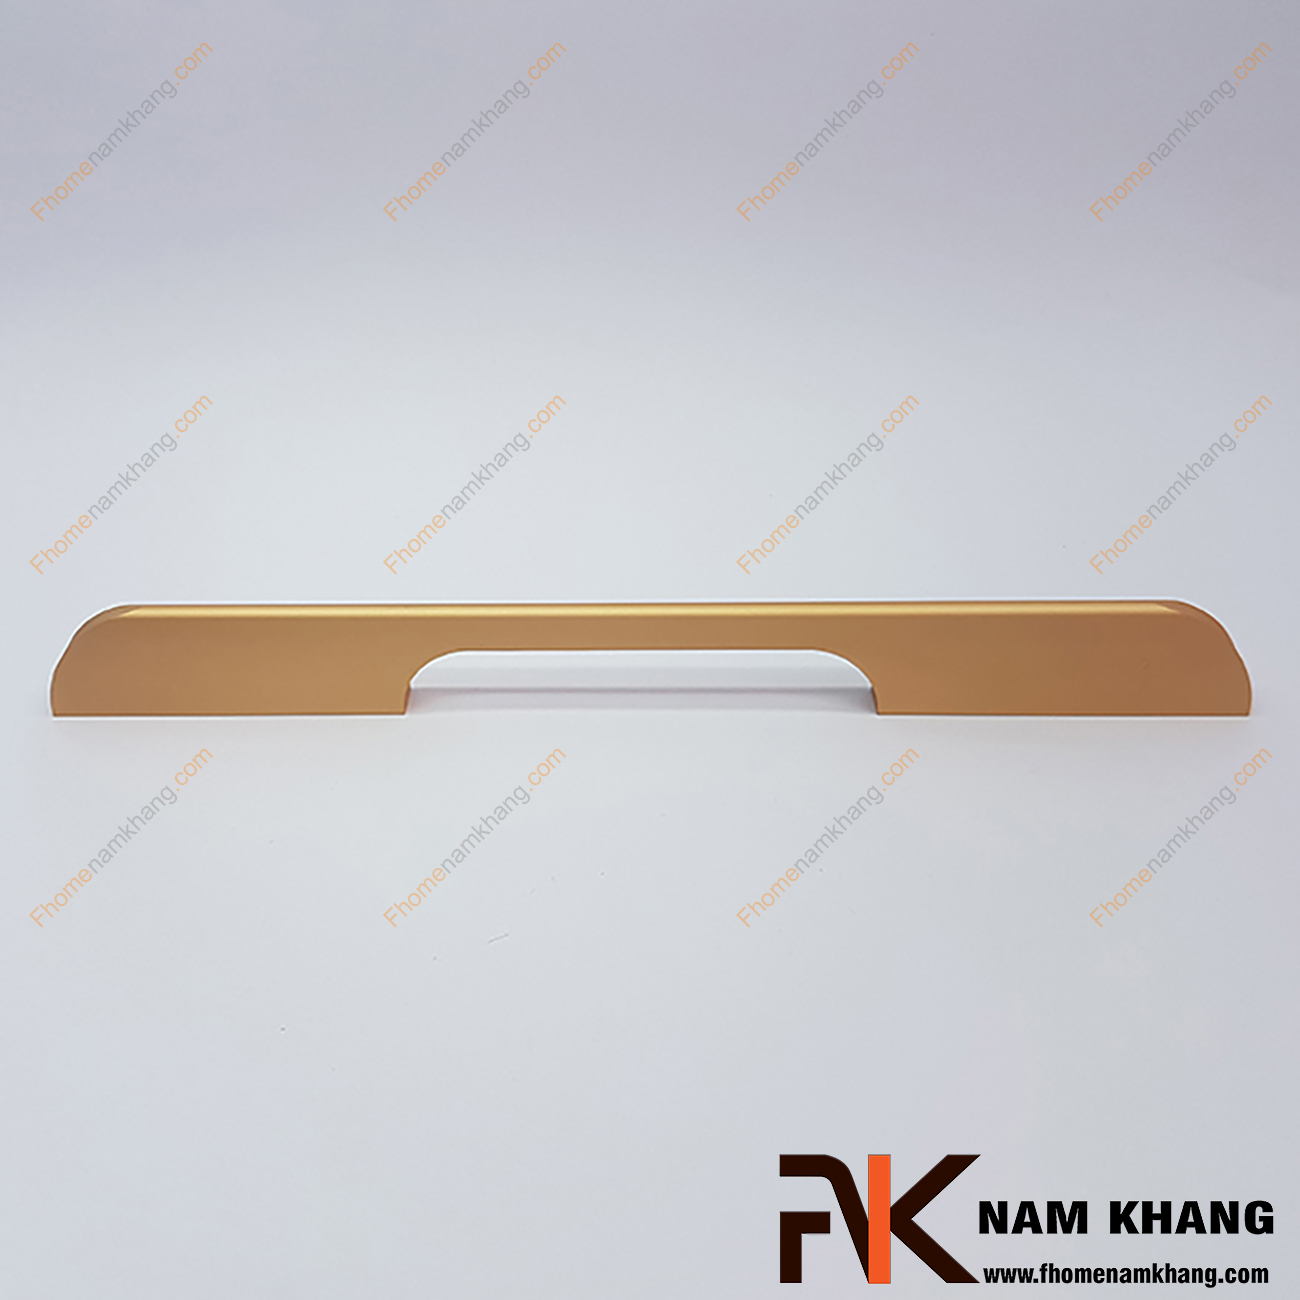 Tay cầm cửa màu vàng mờ NK217-192VM được sản xuất từ hợp kim chất lượng cao và được gia công trên dây chuyền hiện đại cho ra độ bóng mượt và đường nét bo cạnh mềm mại.